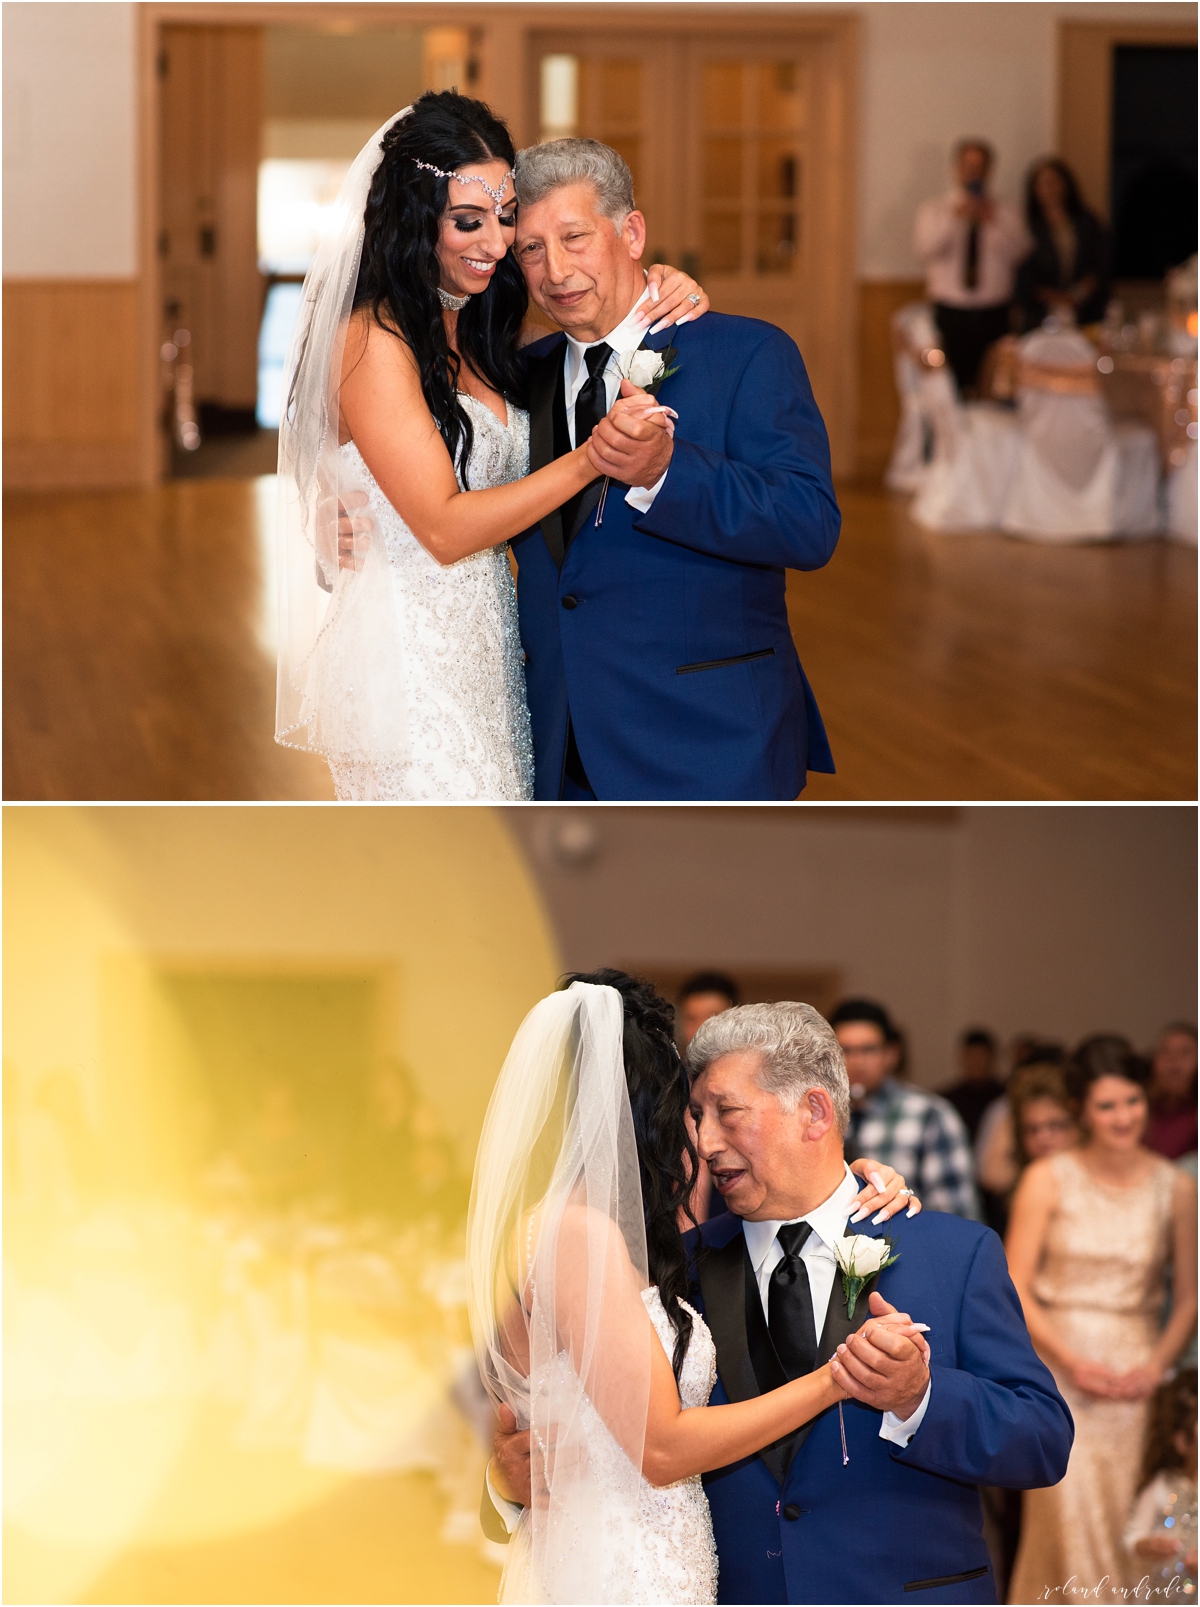 Italian American Society Wedding in Kenosha Wisconsin, Kenosha Wisconsin Wedding Photographer, Chicago Wedding Photography Kenosha Mexican Italian Wedding_0064.jpg